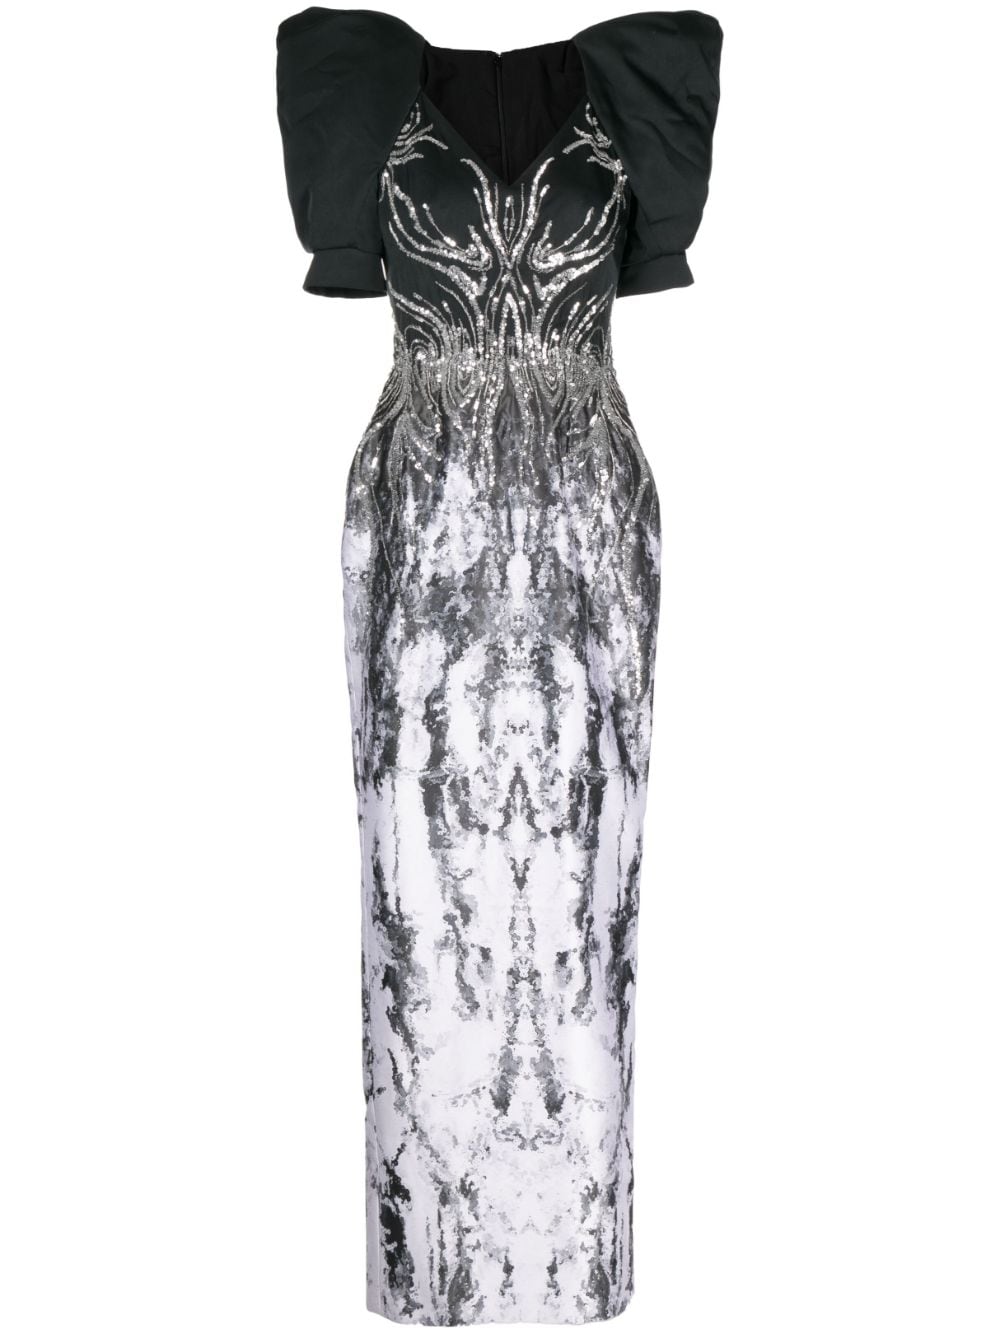 Saiid Kobeisy sequin-embellished gown - Black von Saiid Kobeisy